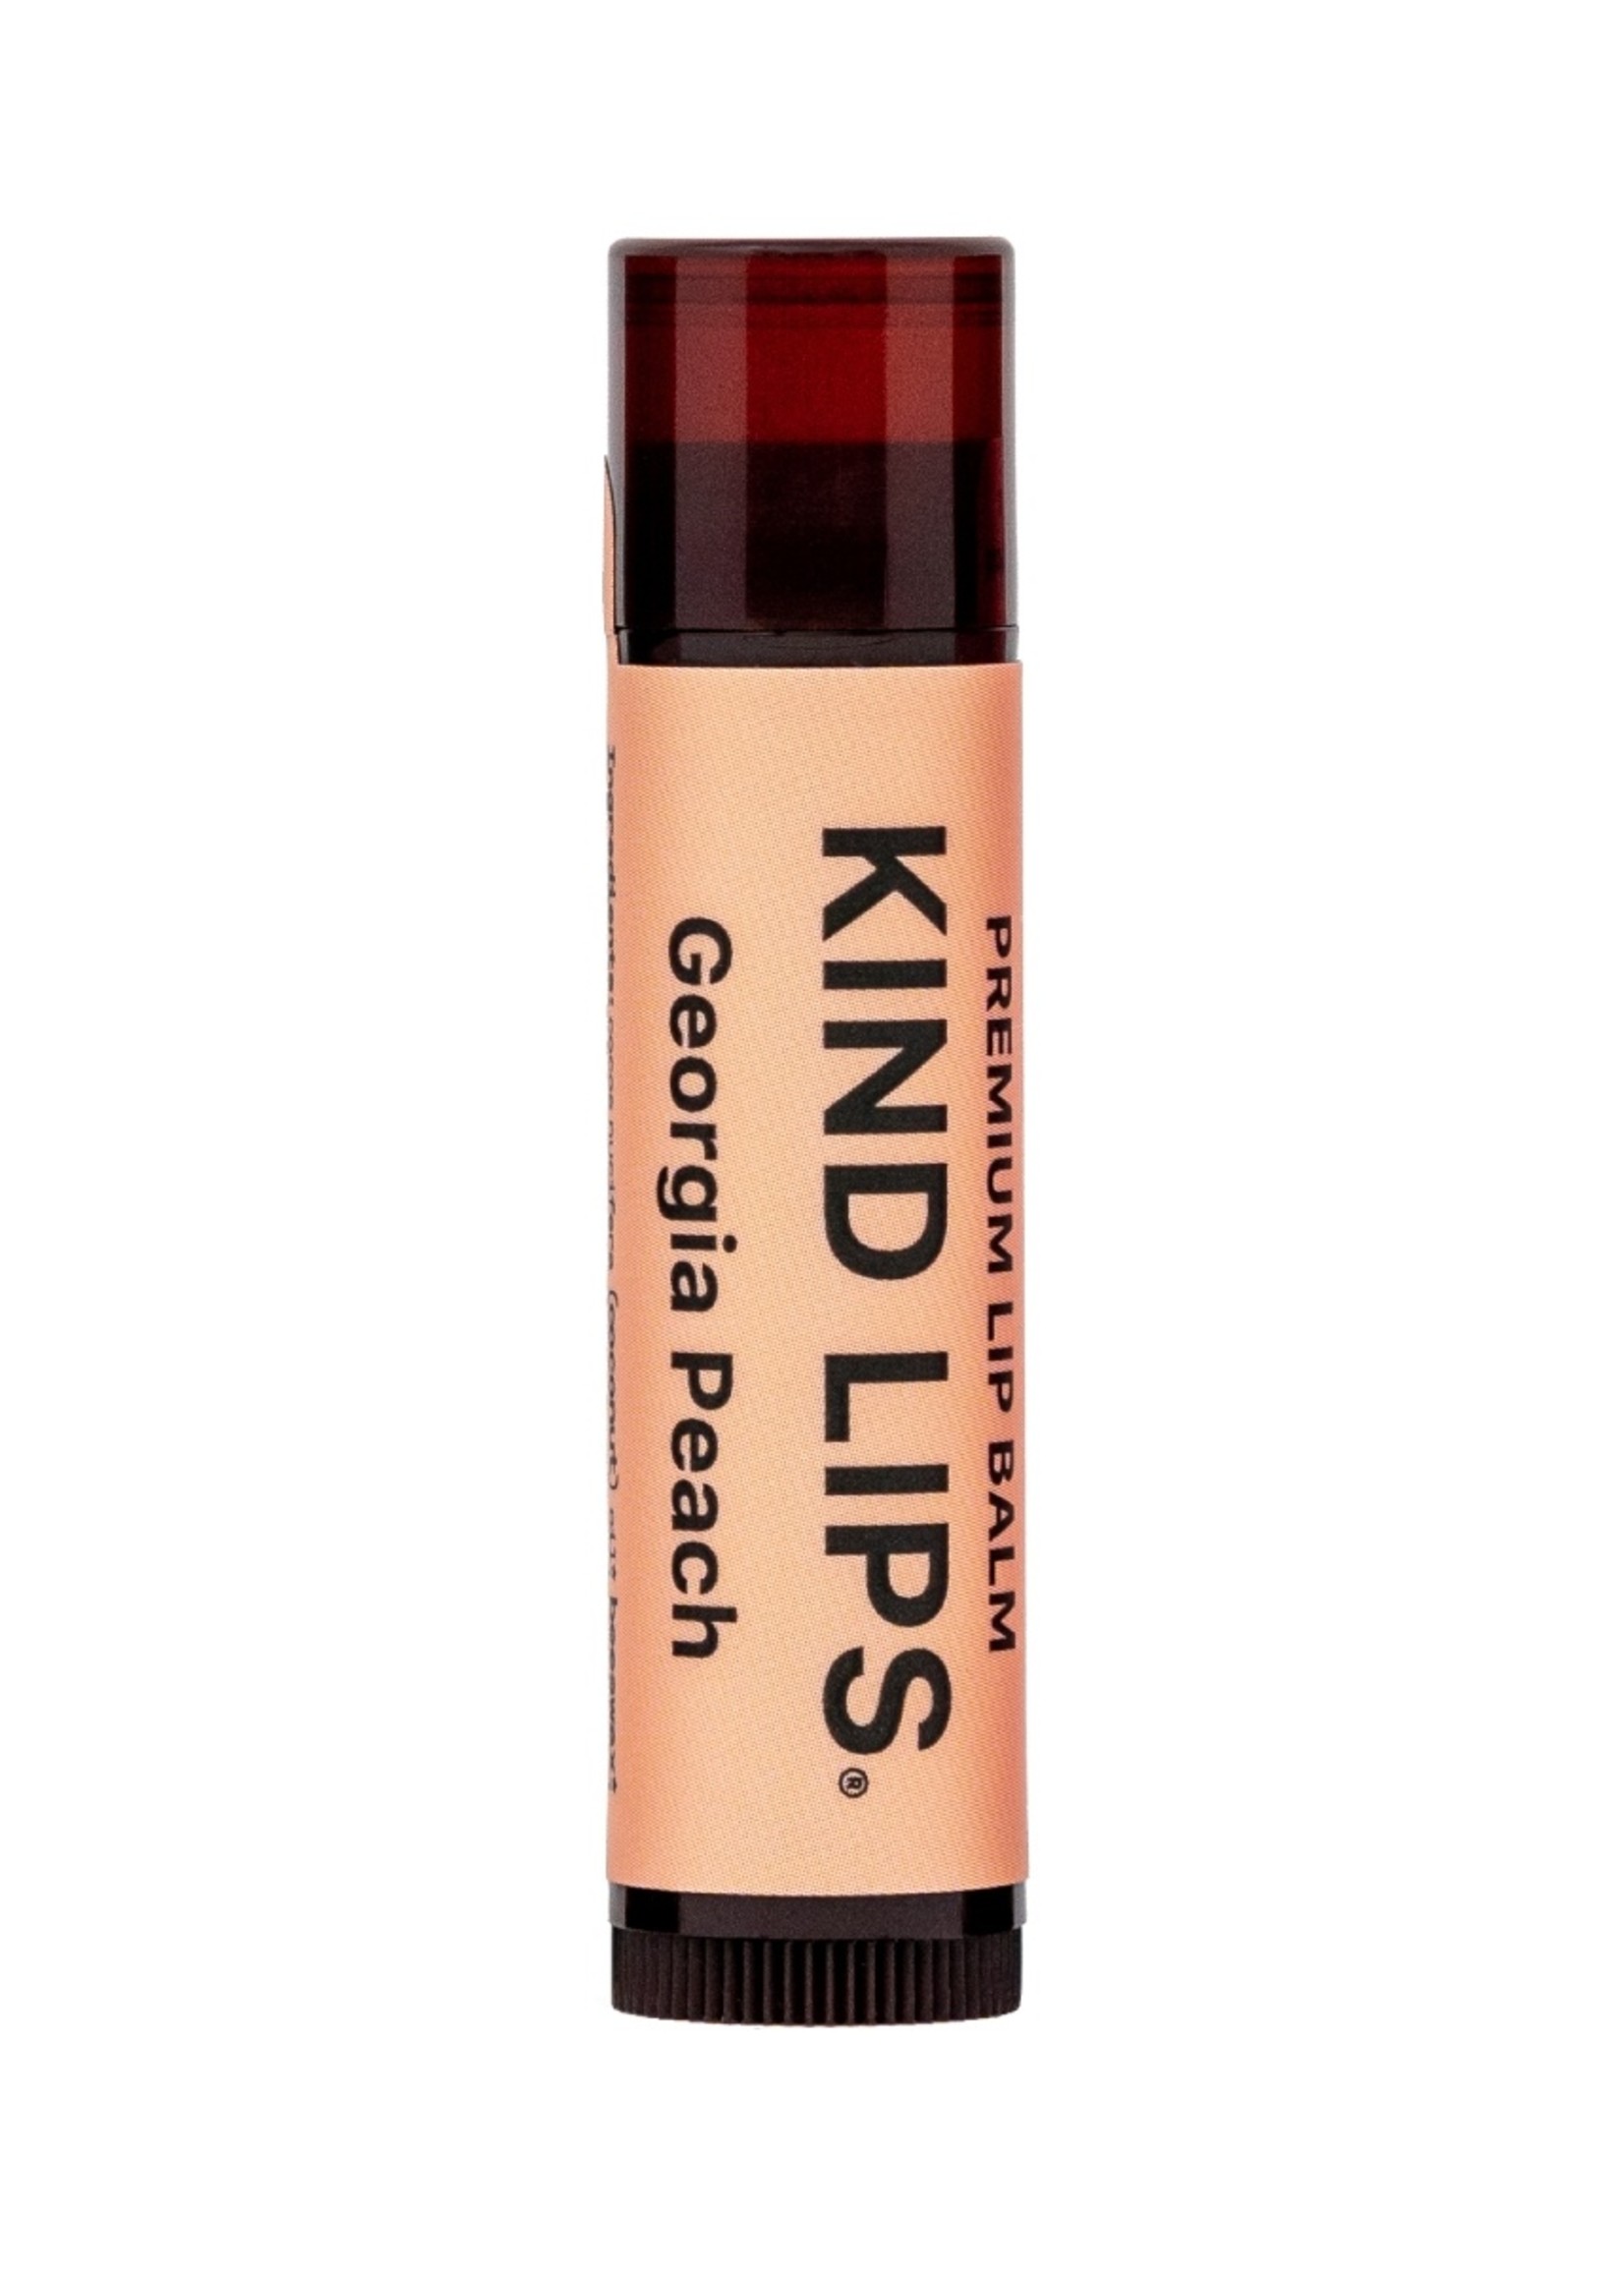 Kind LIps Georgia Peach Kind Lips Chapstick